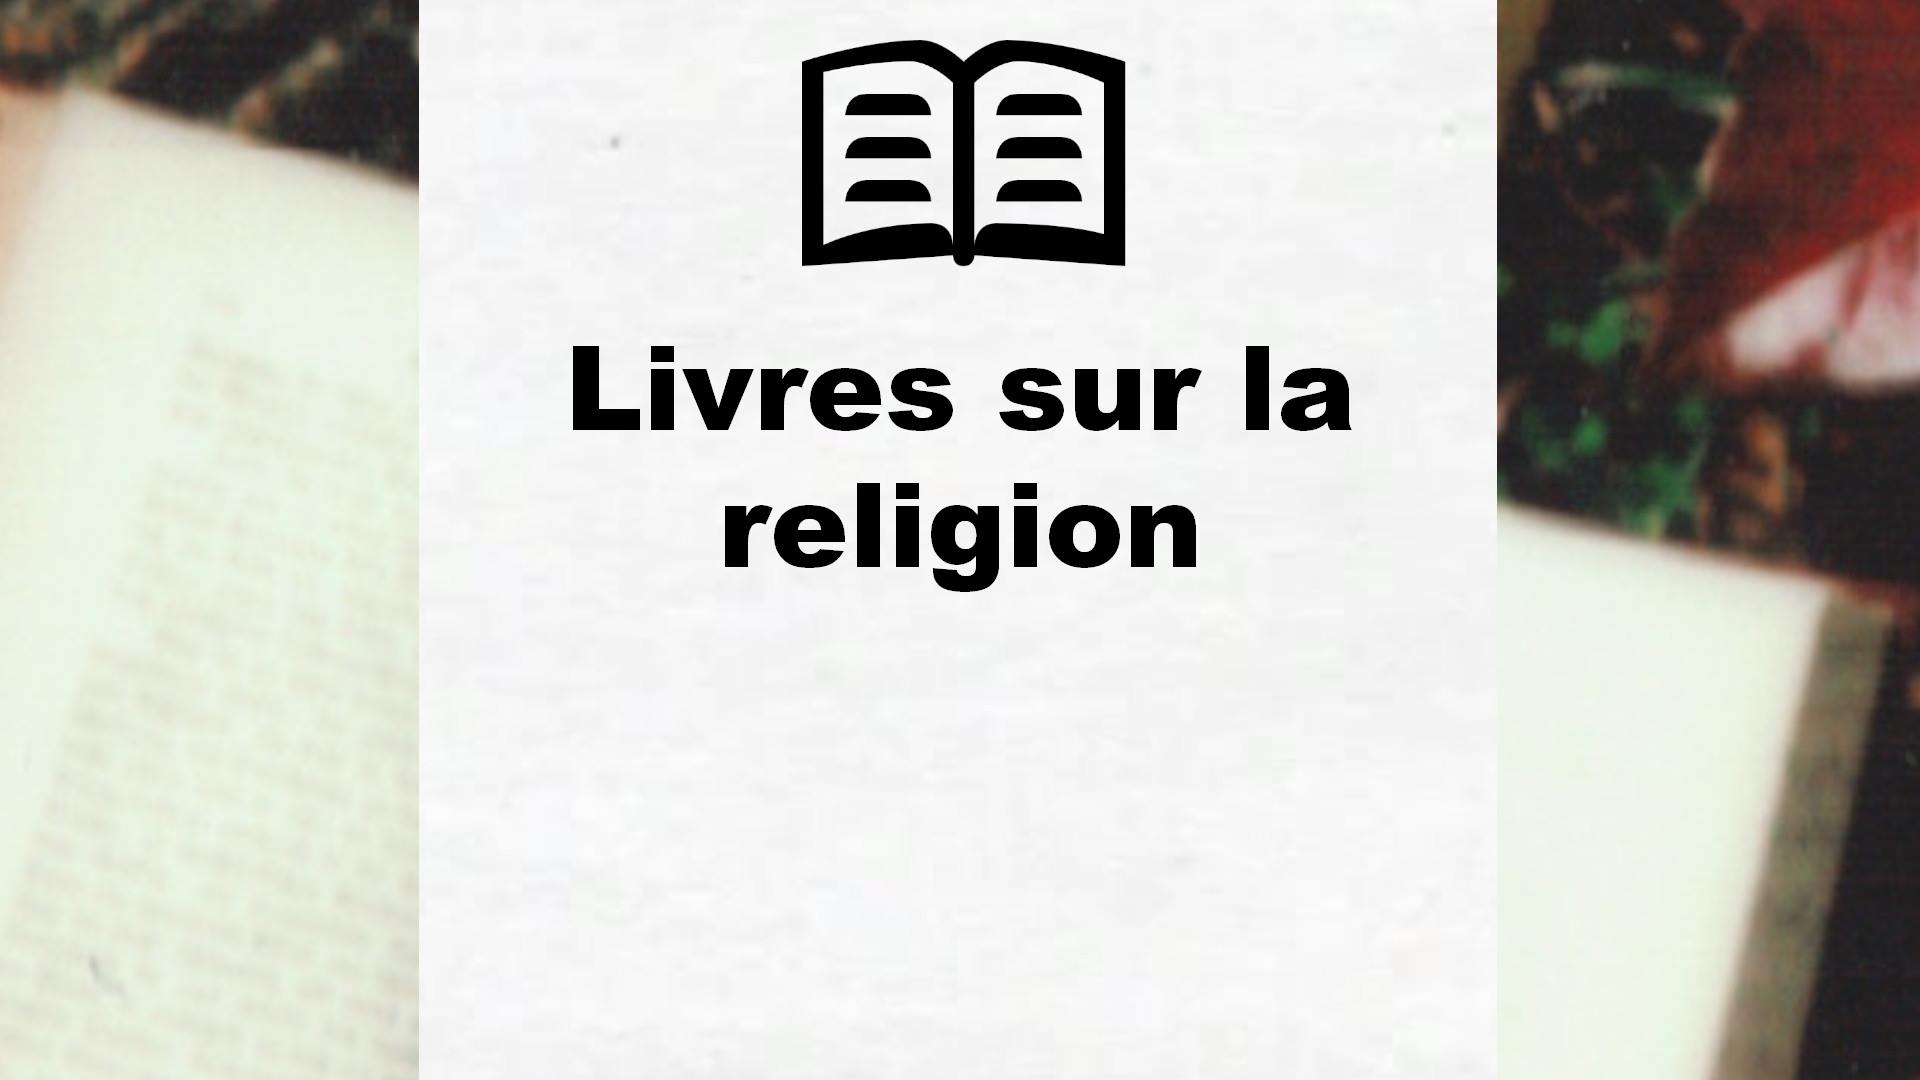 Livres sur la religion